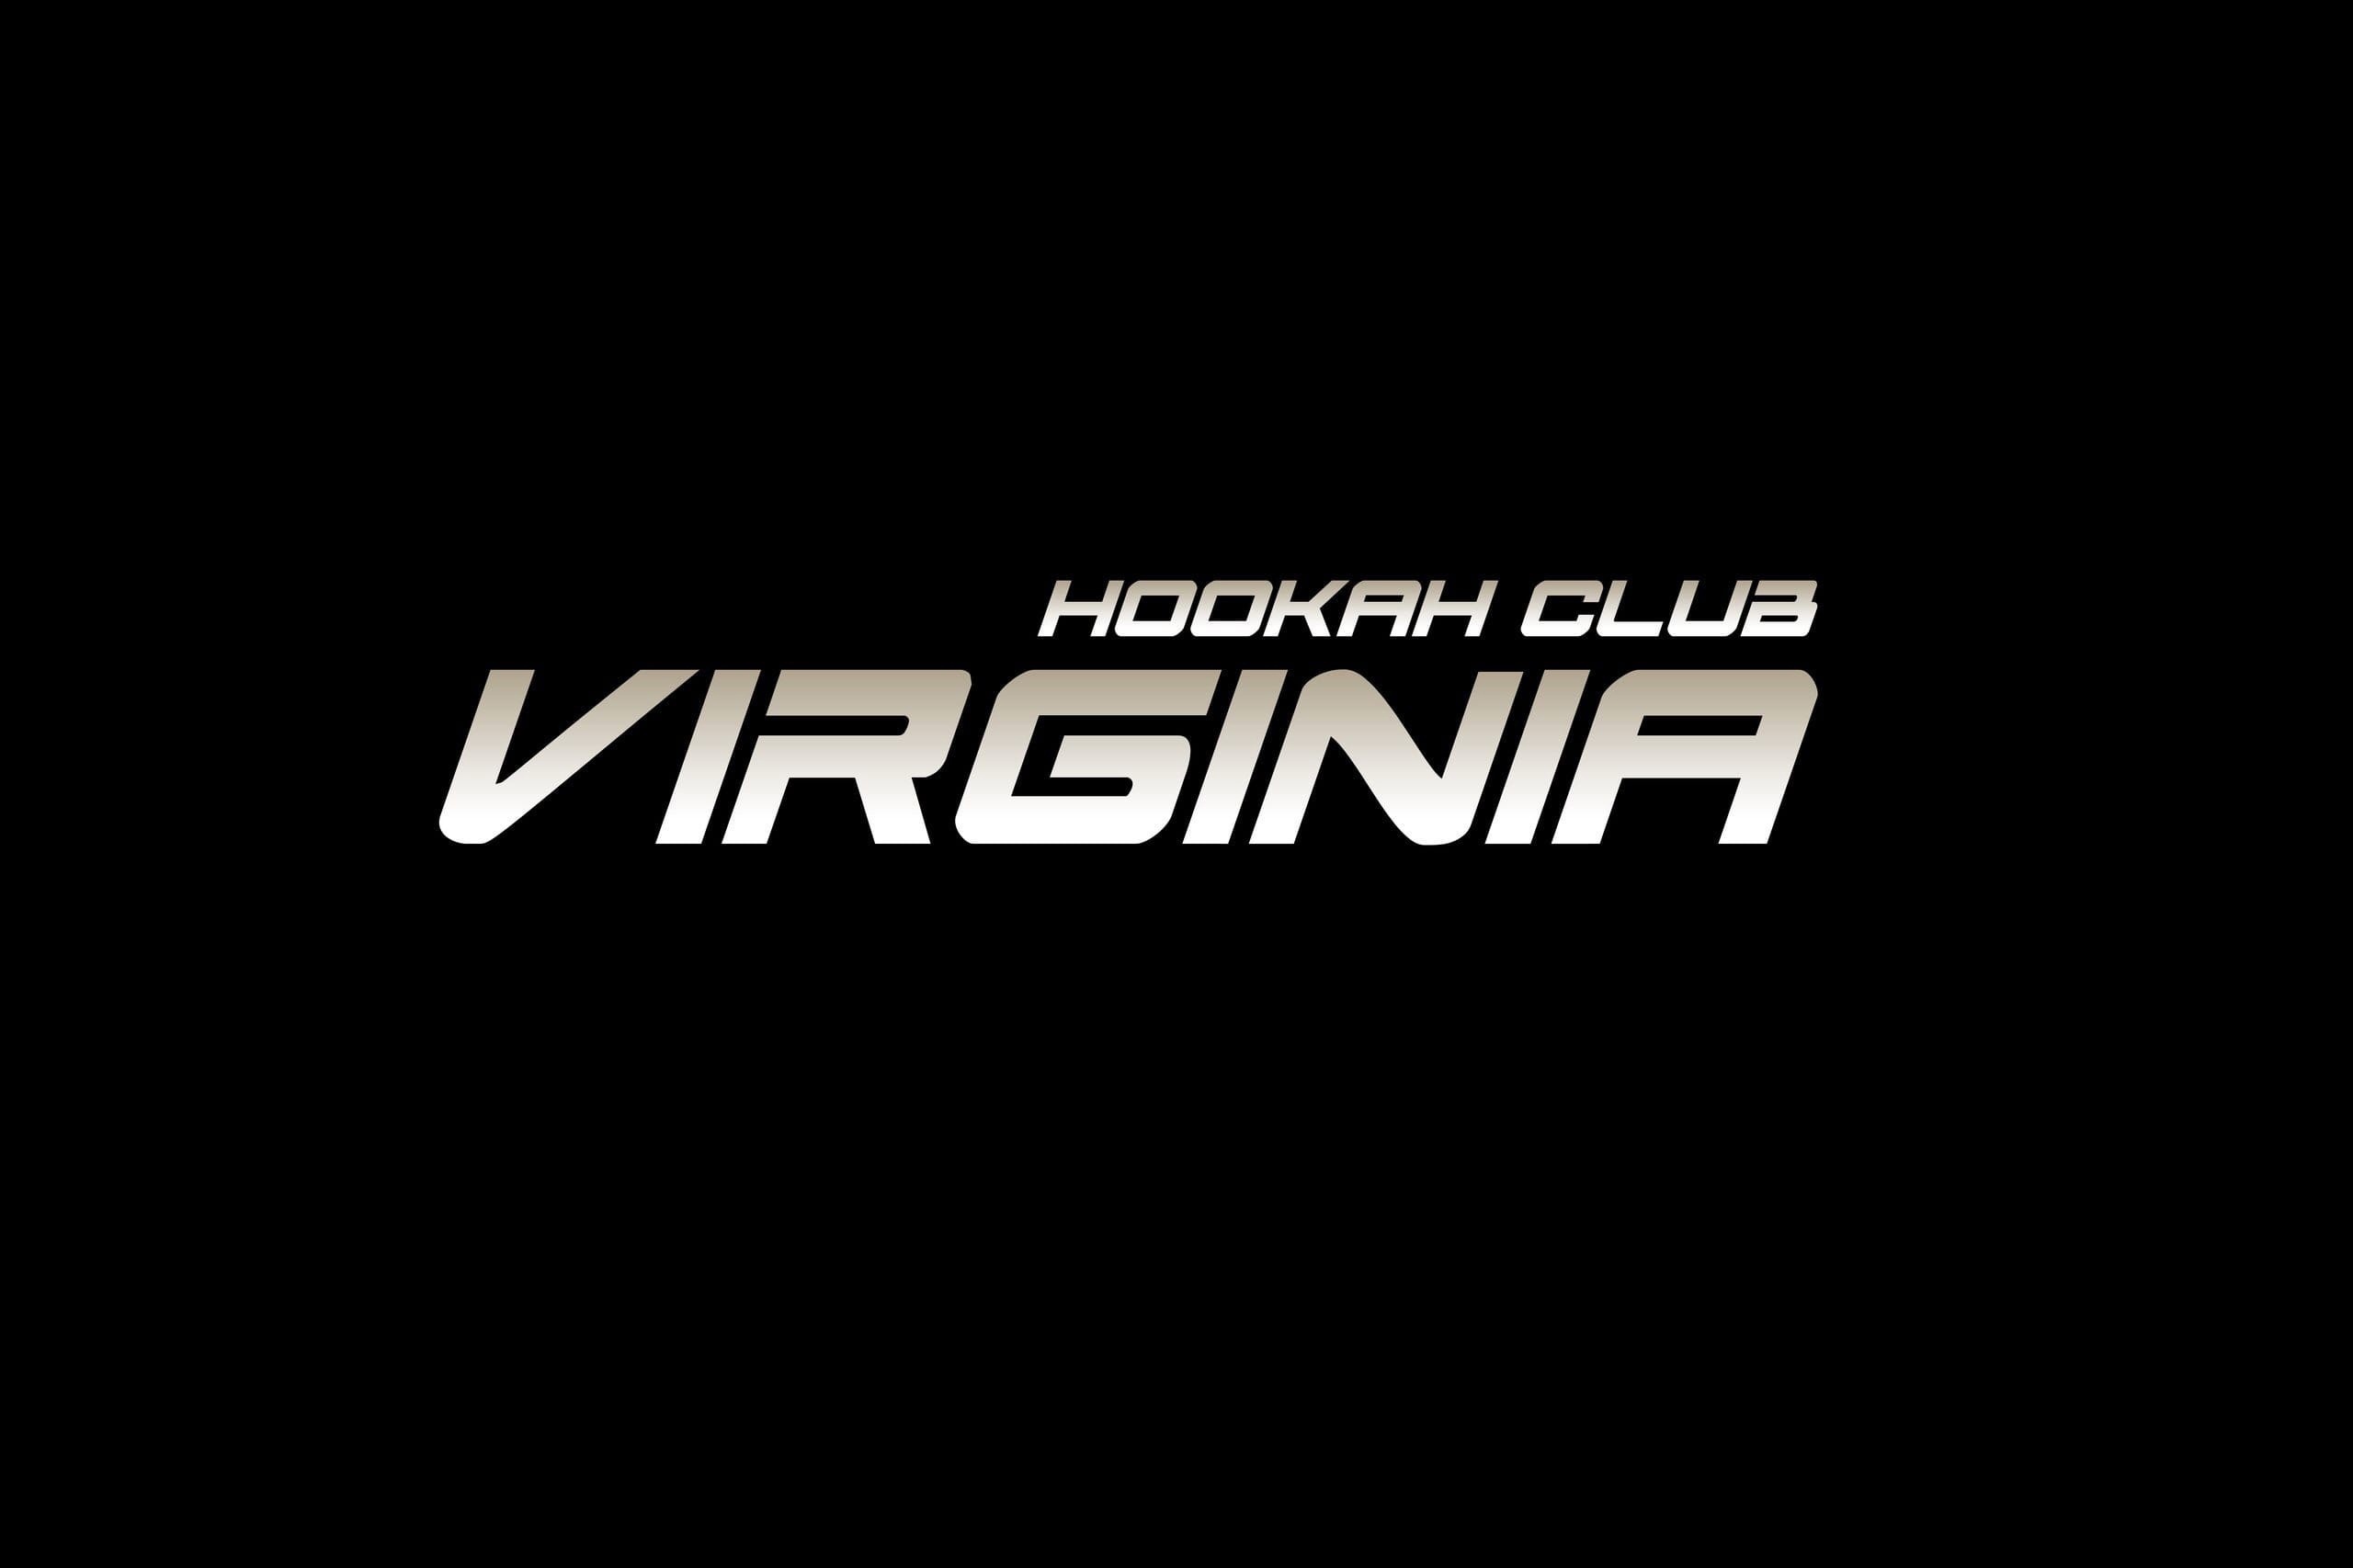 VIRGINIA Hookah Club